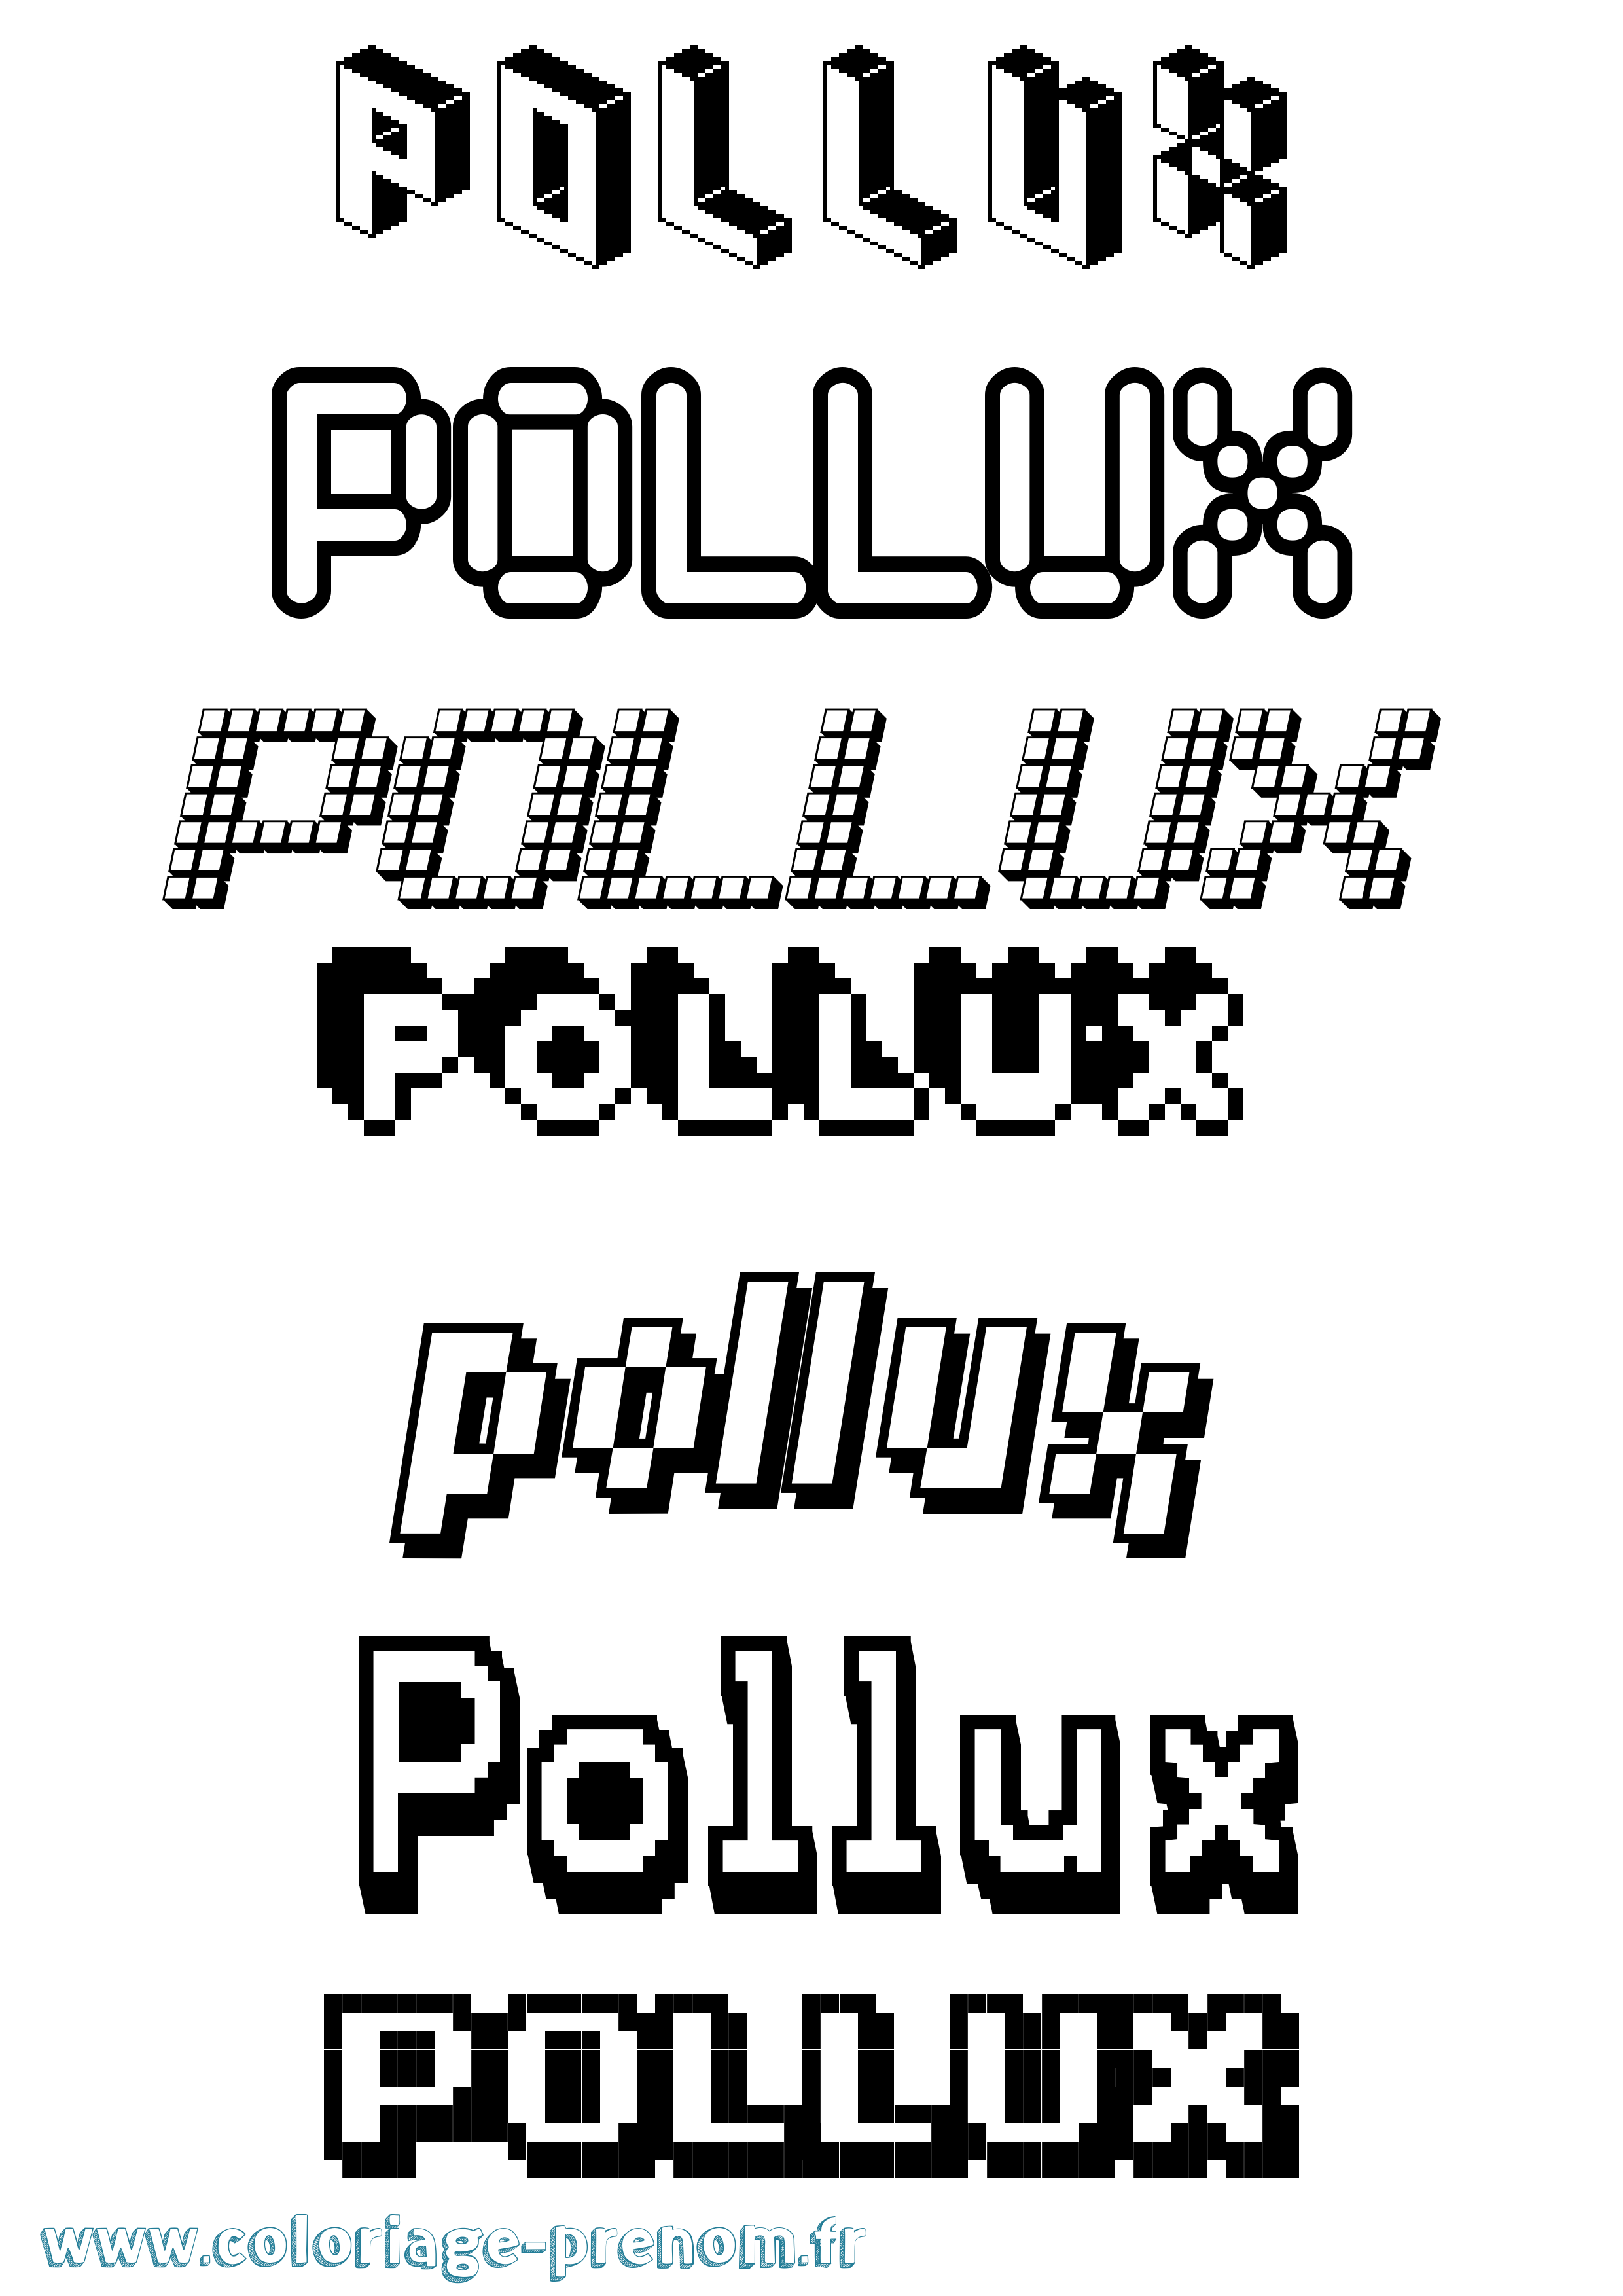 Coloriage prénom Pollux Pixel